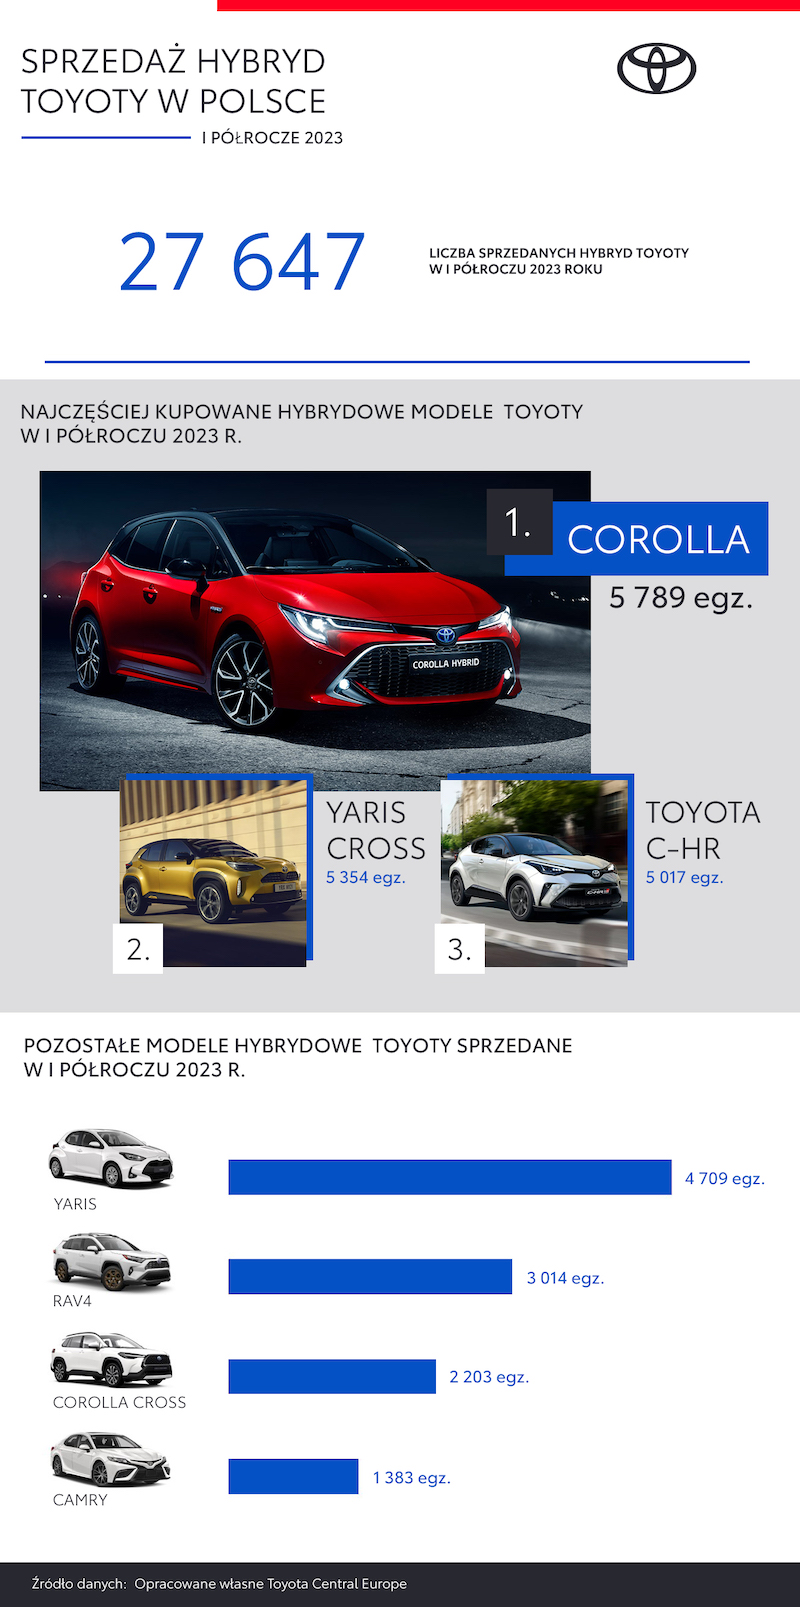 Prawie 80% sprzedaży Toyoty w Polsce to hybrydy. Corolla najpopularniejszym modelem hybrydowym